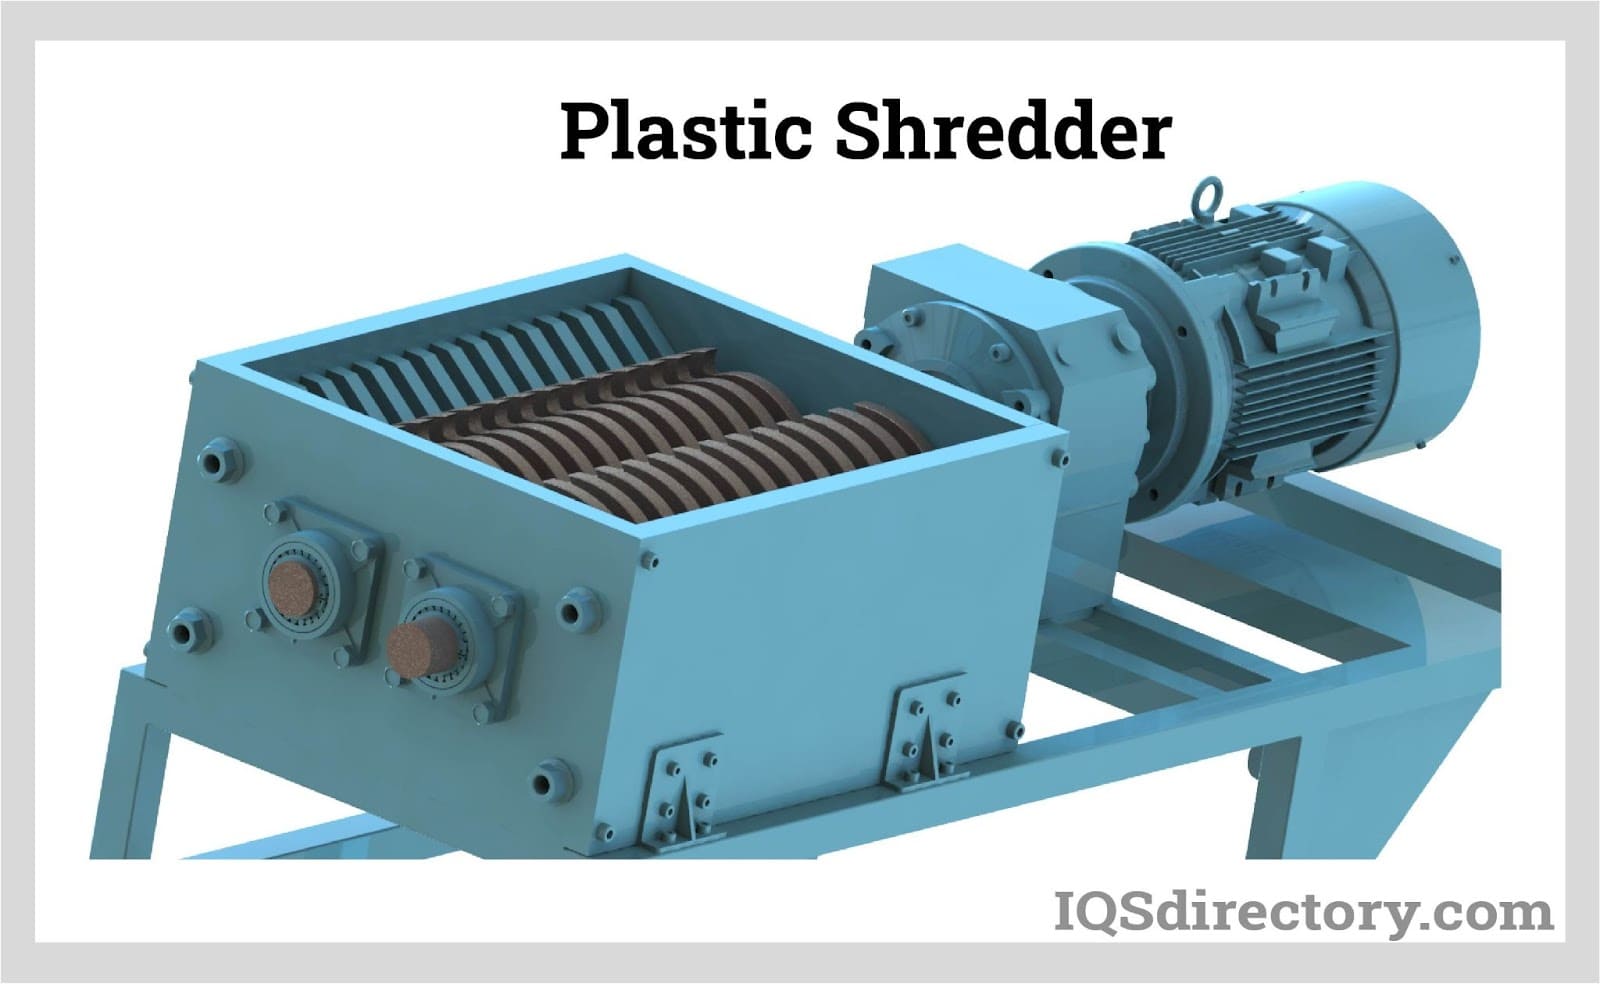 Plastic Shredder